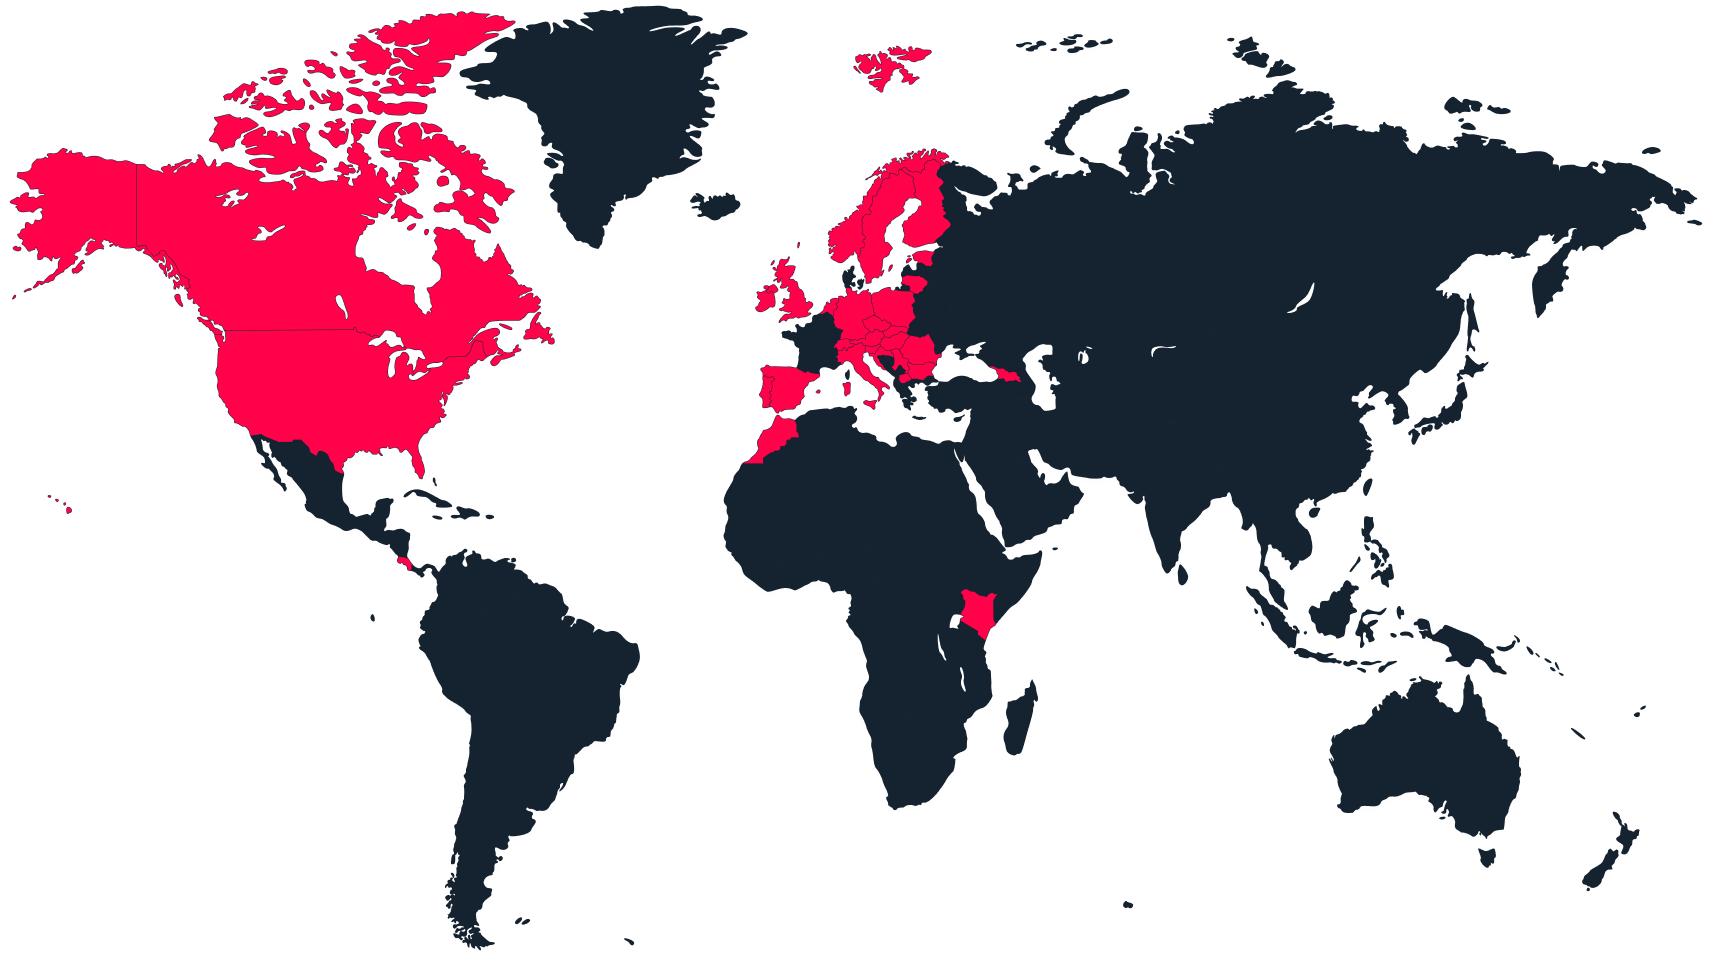 O hartă a lumii cu țările active marcate cu roșu